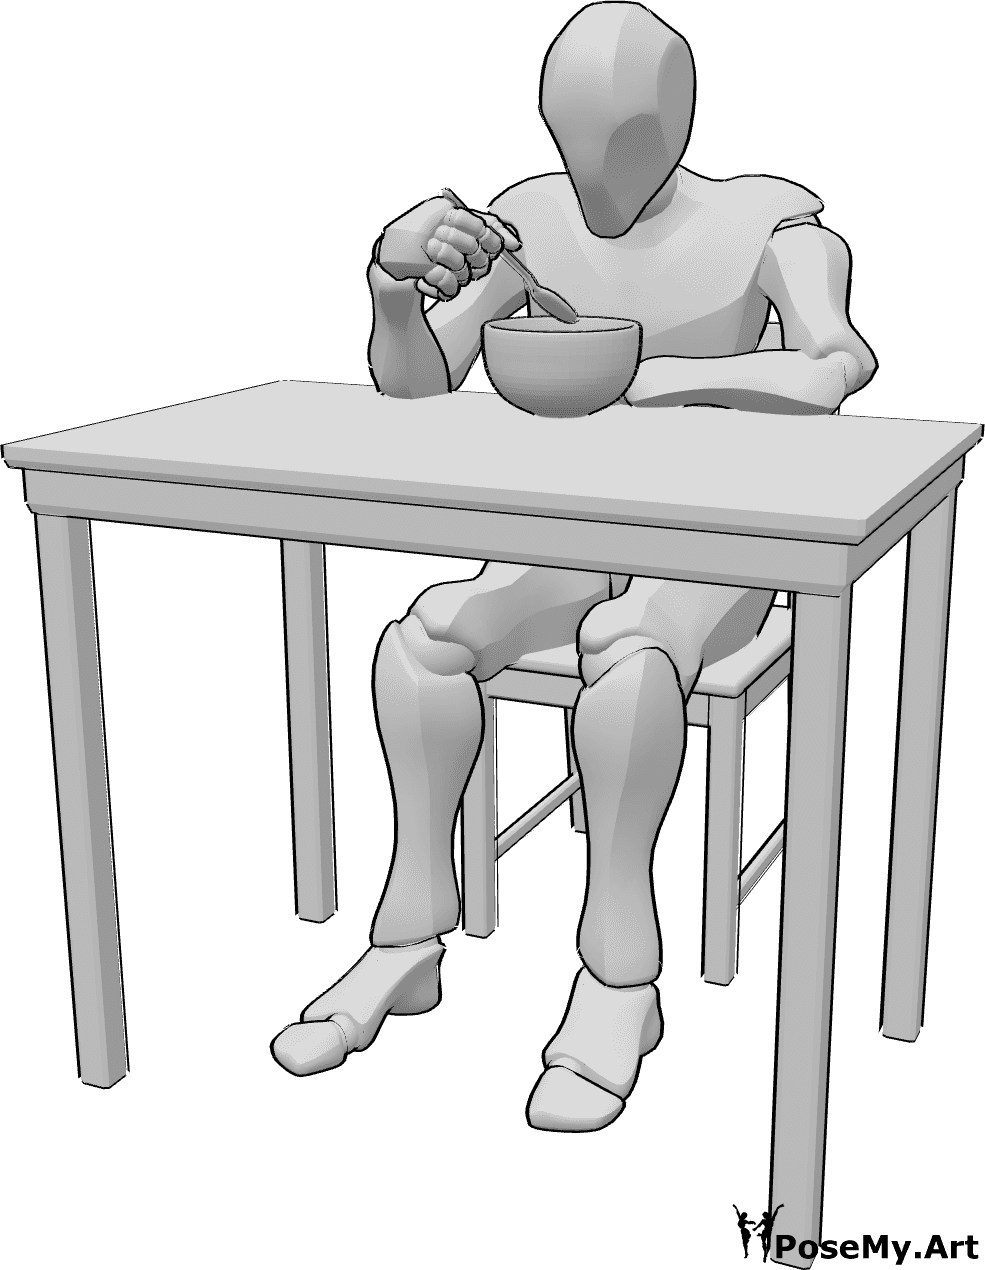 Referencia de poses- Hombre sentado comiendo - Varón sentado a la mesa comiendo de un cuenco con la cuchara en la mano derecha.